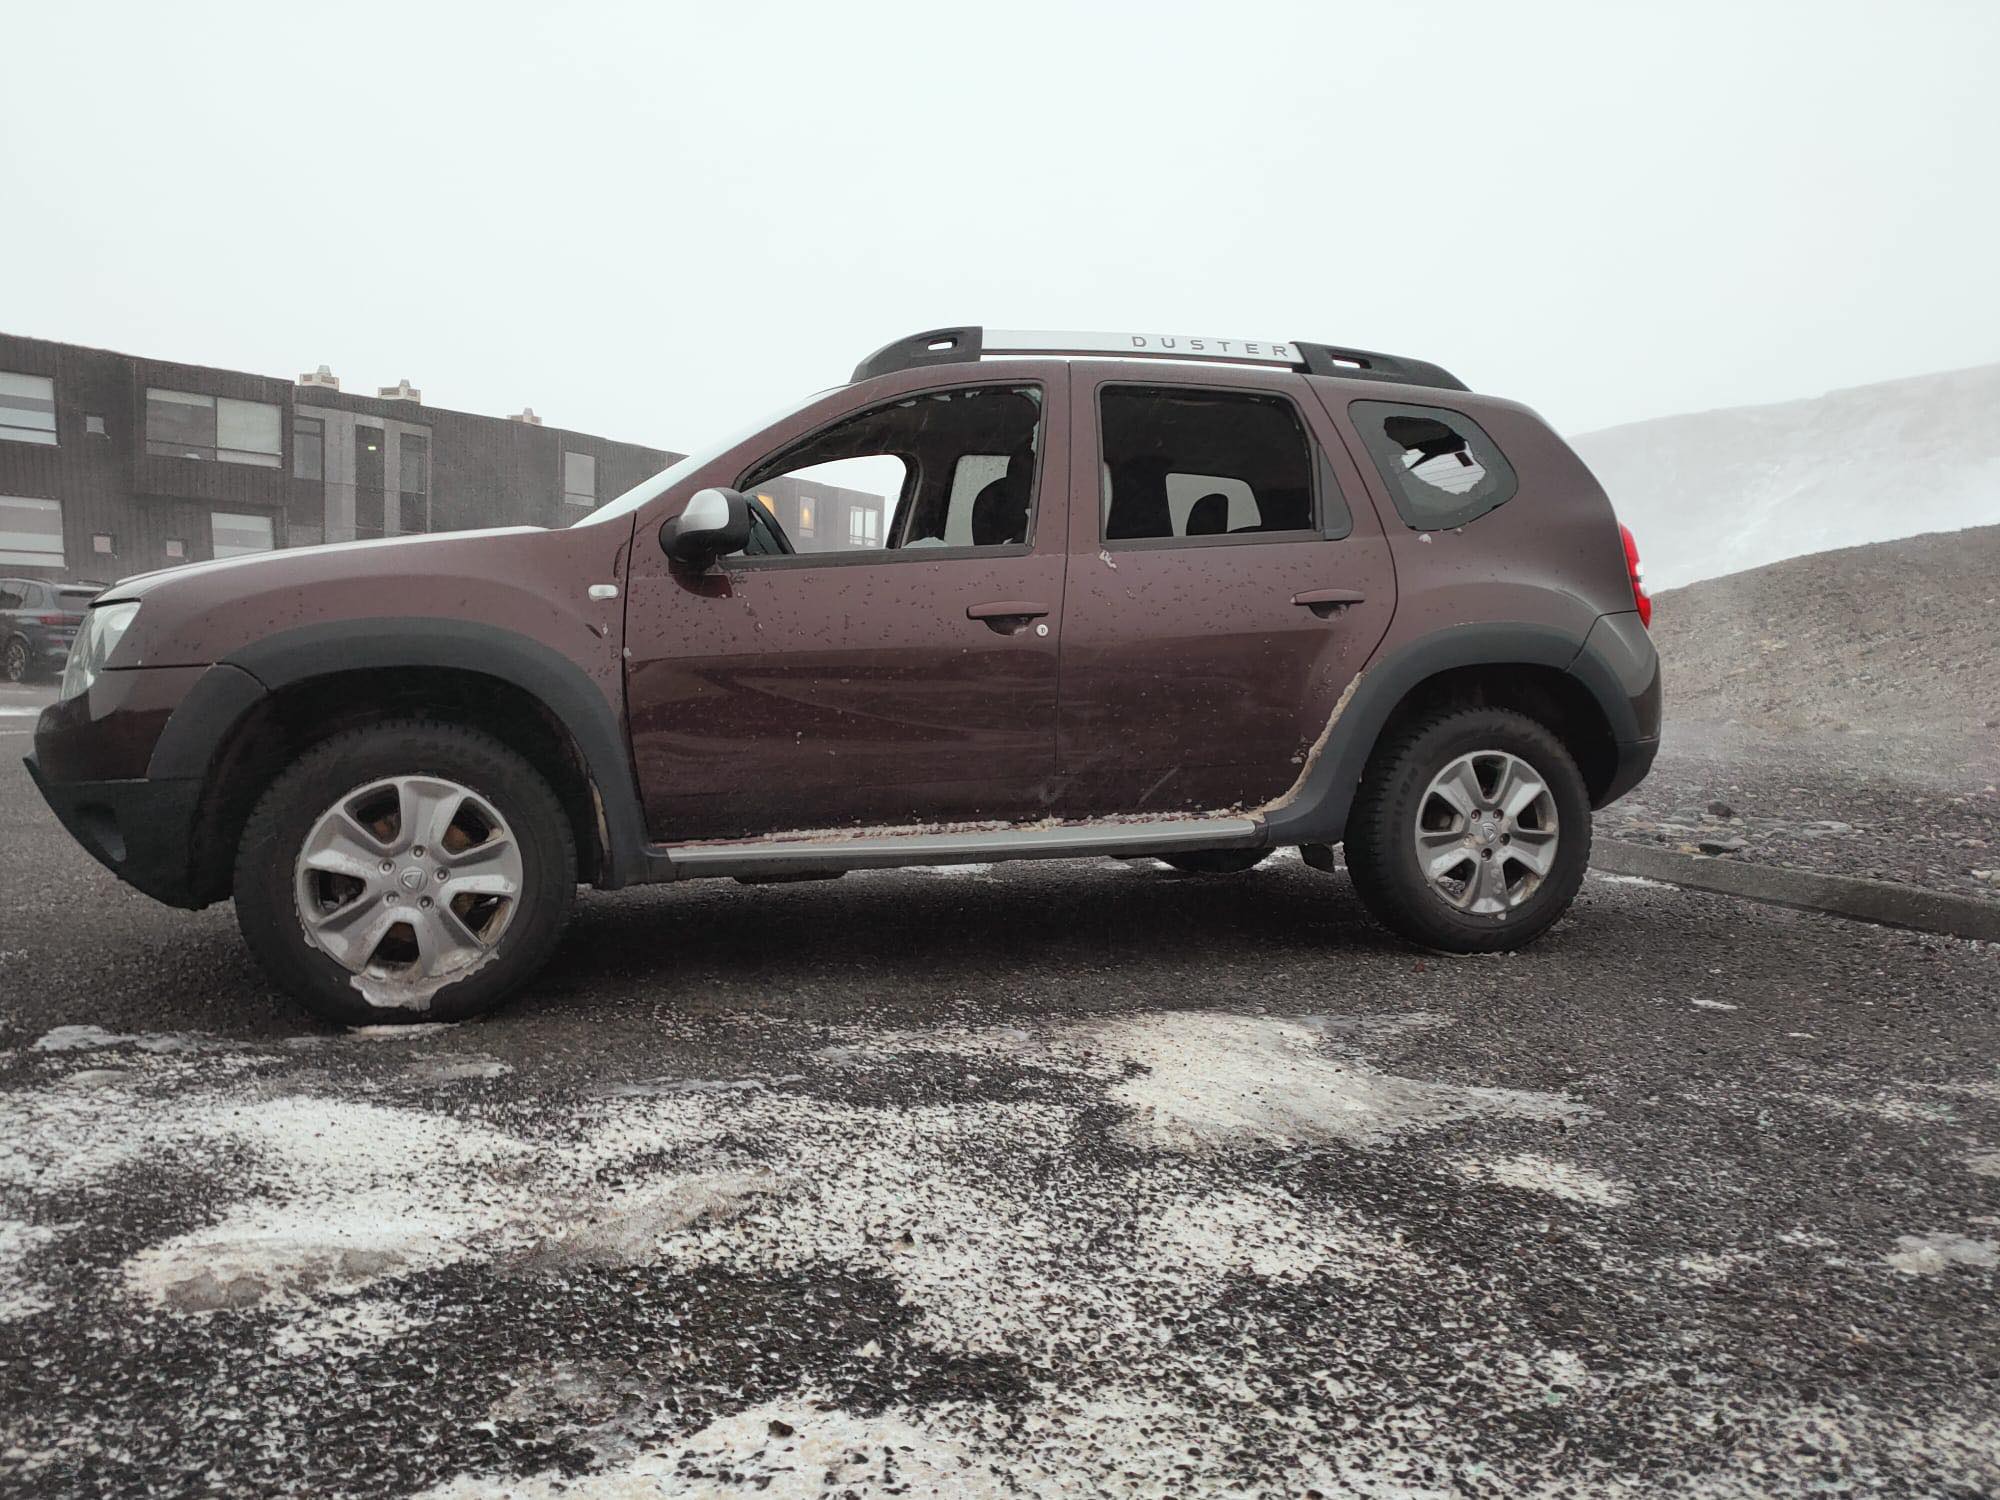 Car damaged due to sandstorm in Iceland